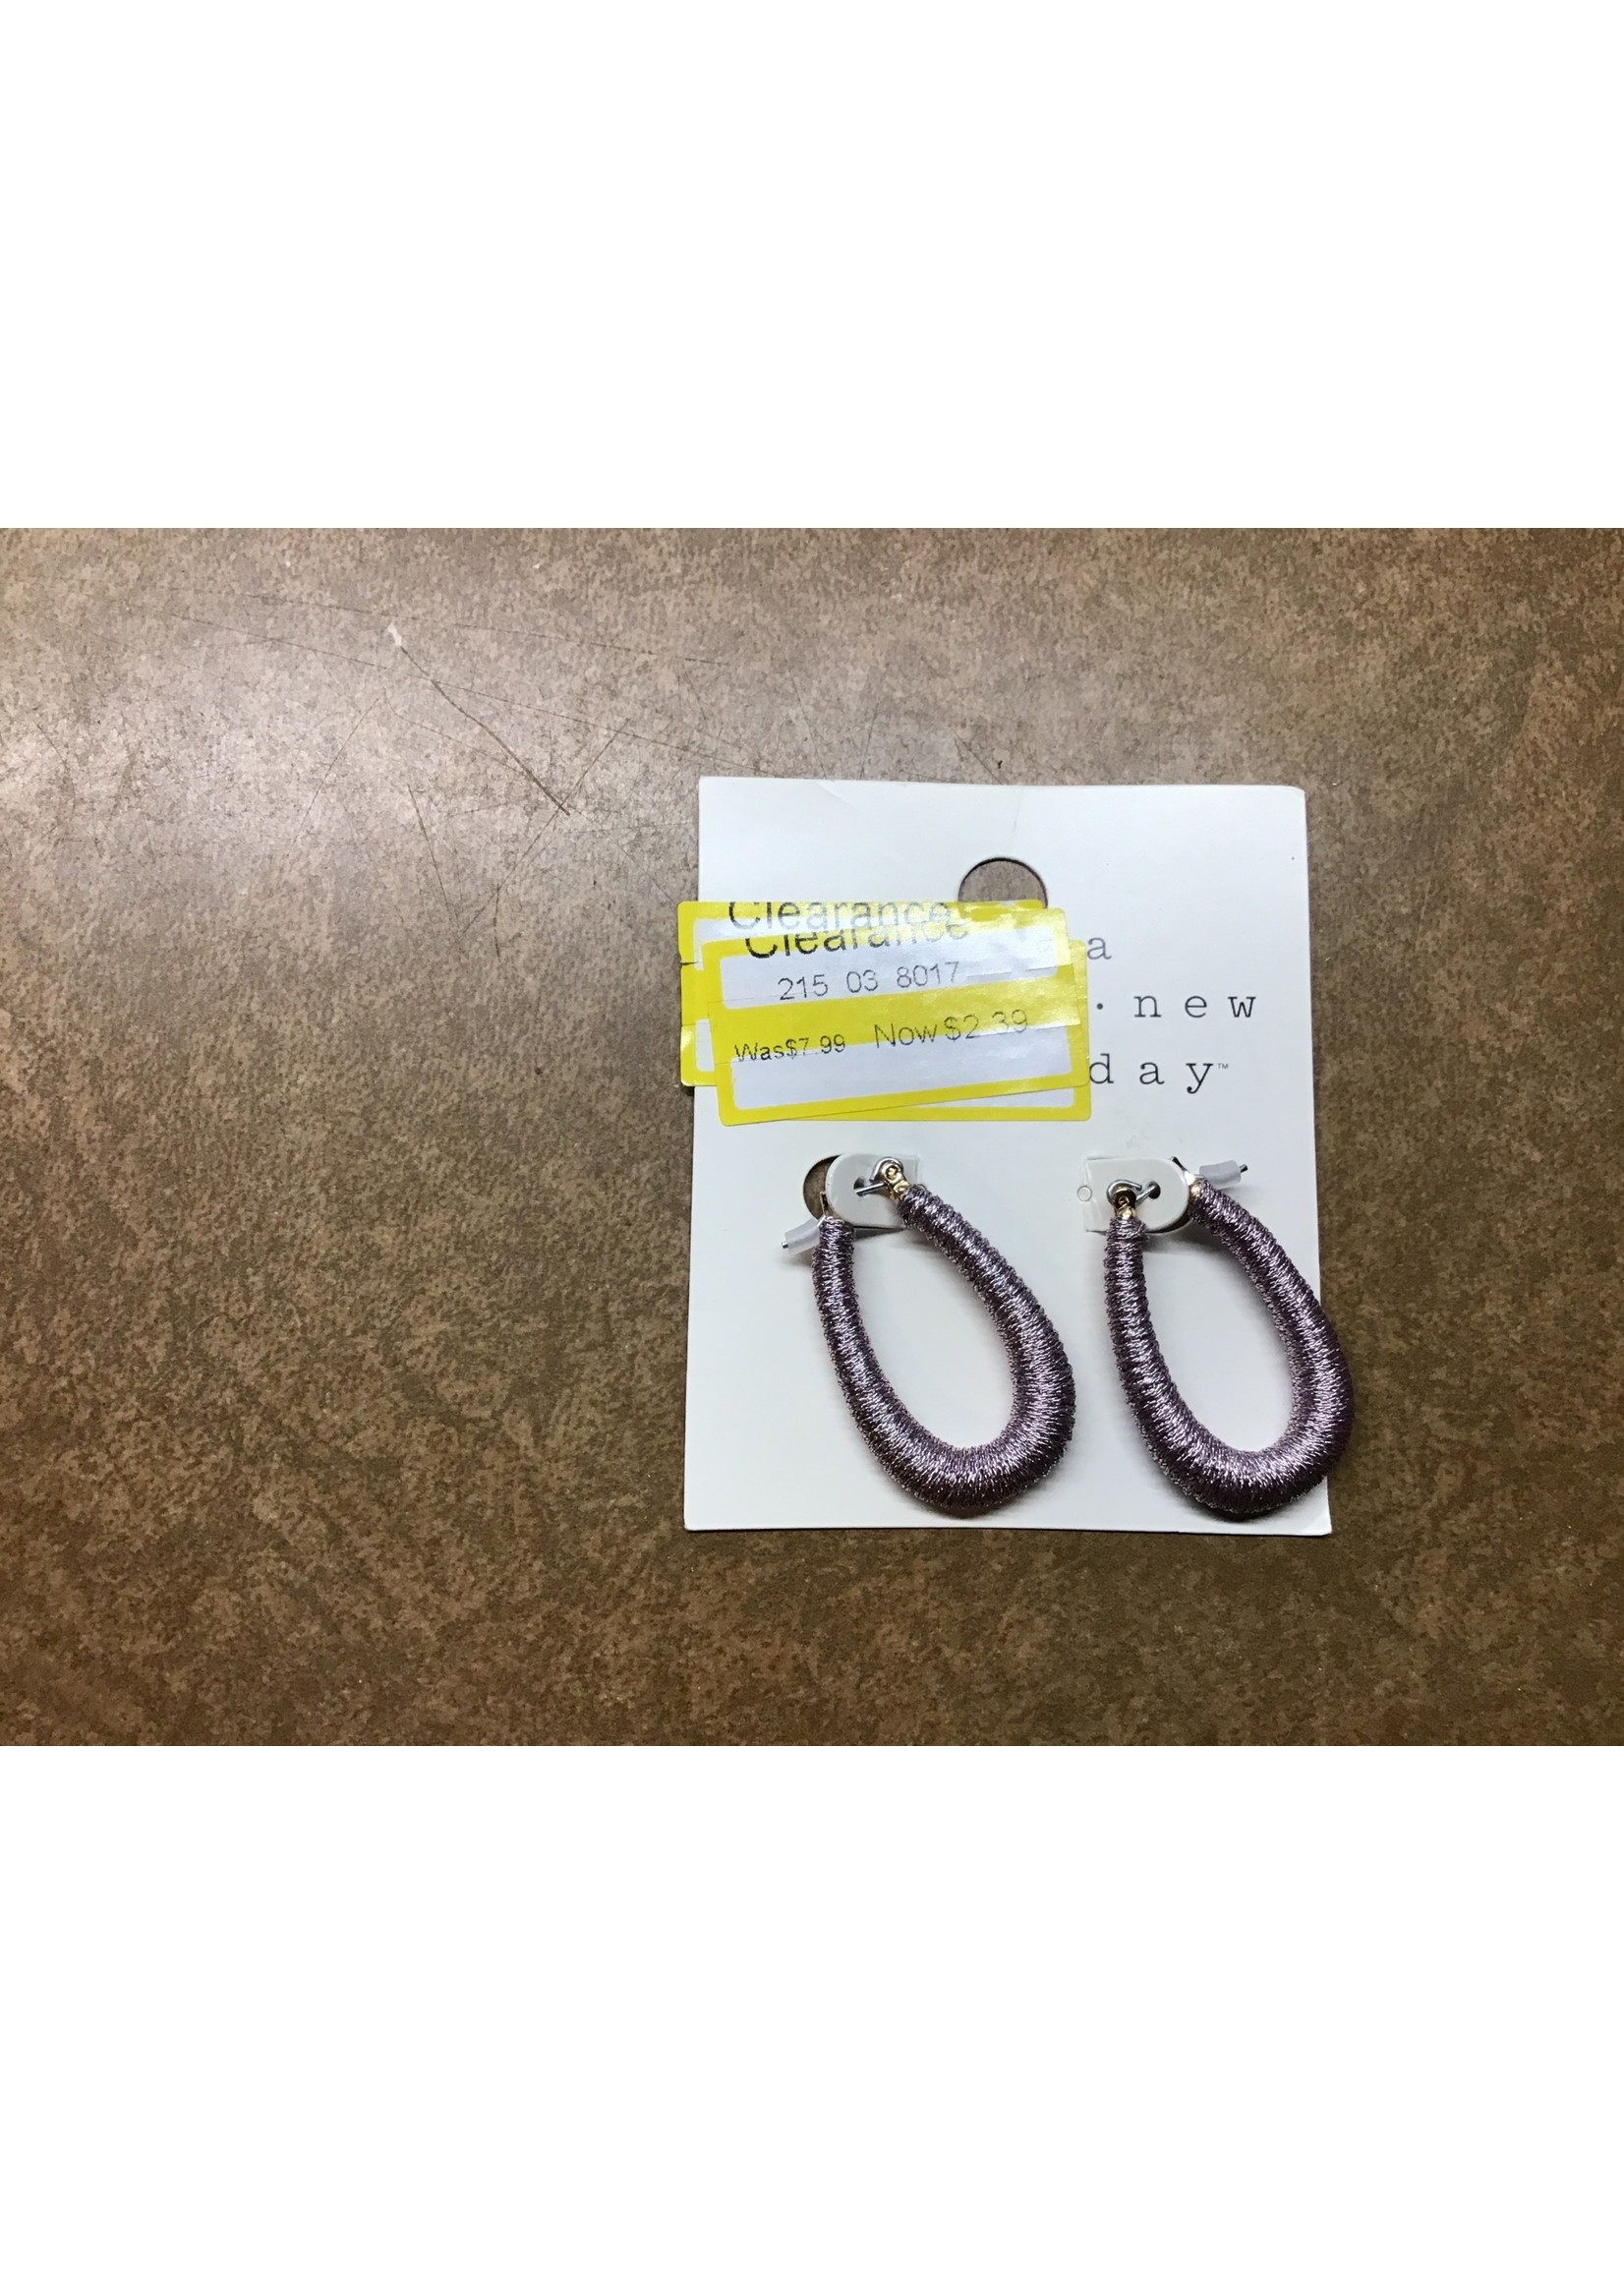 Thread Wrapped Elongated Teardrop Hoop Earrings - A New Day Light Purple